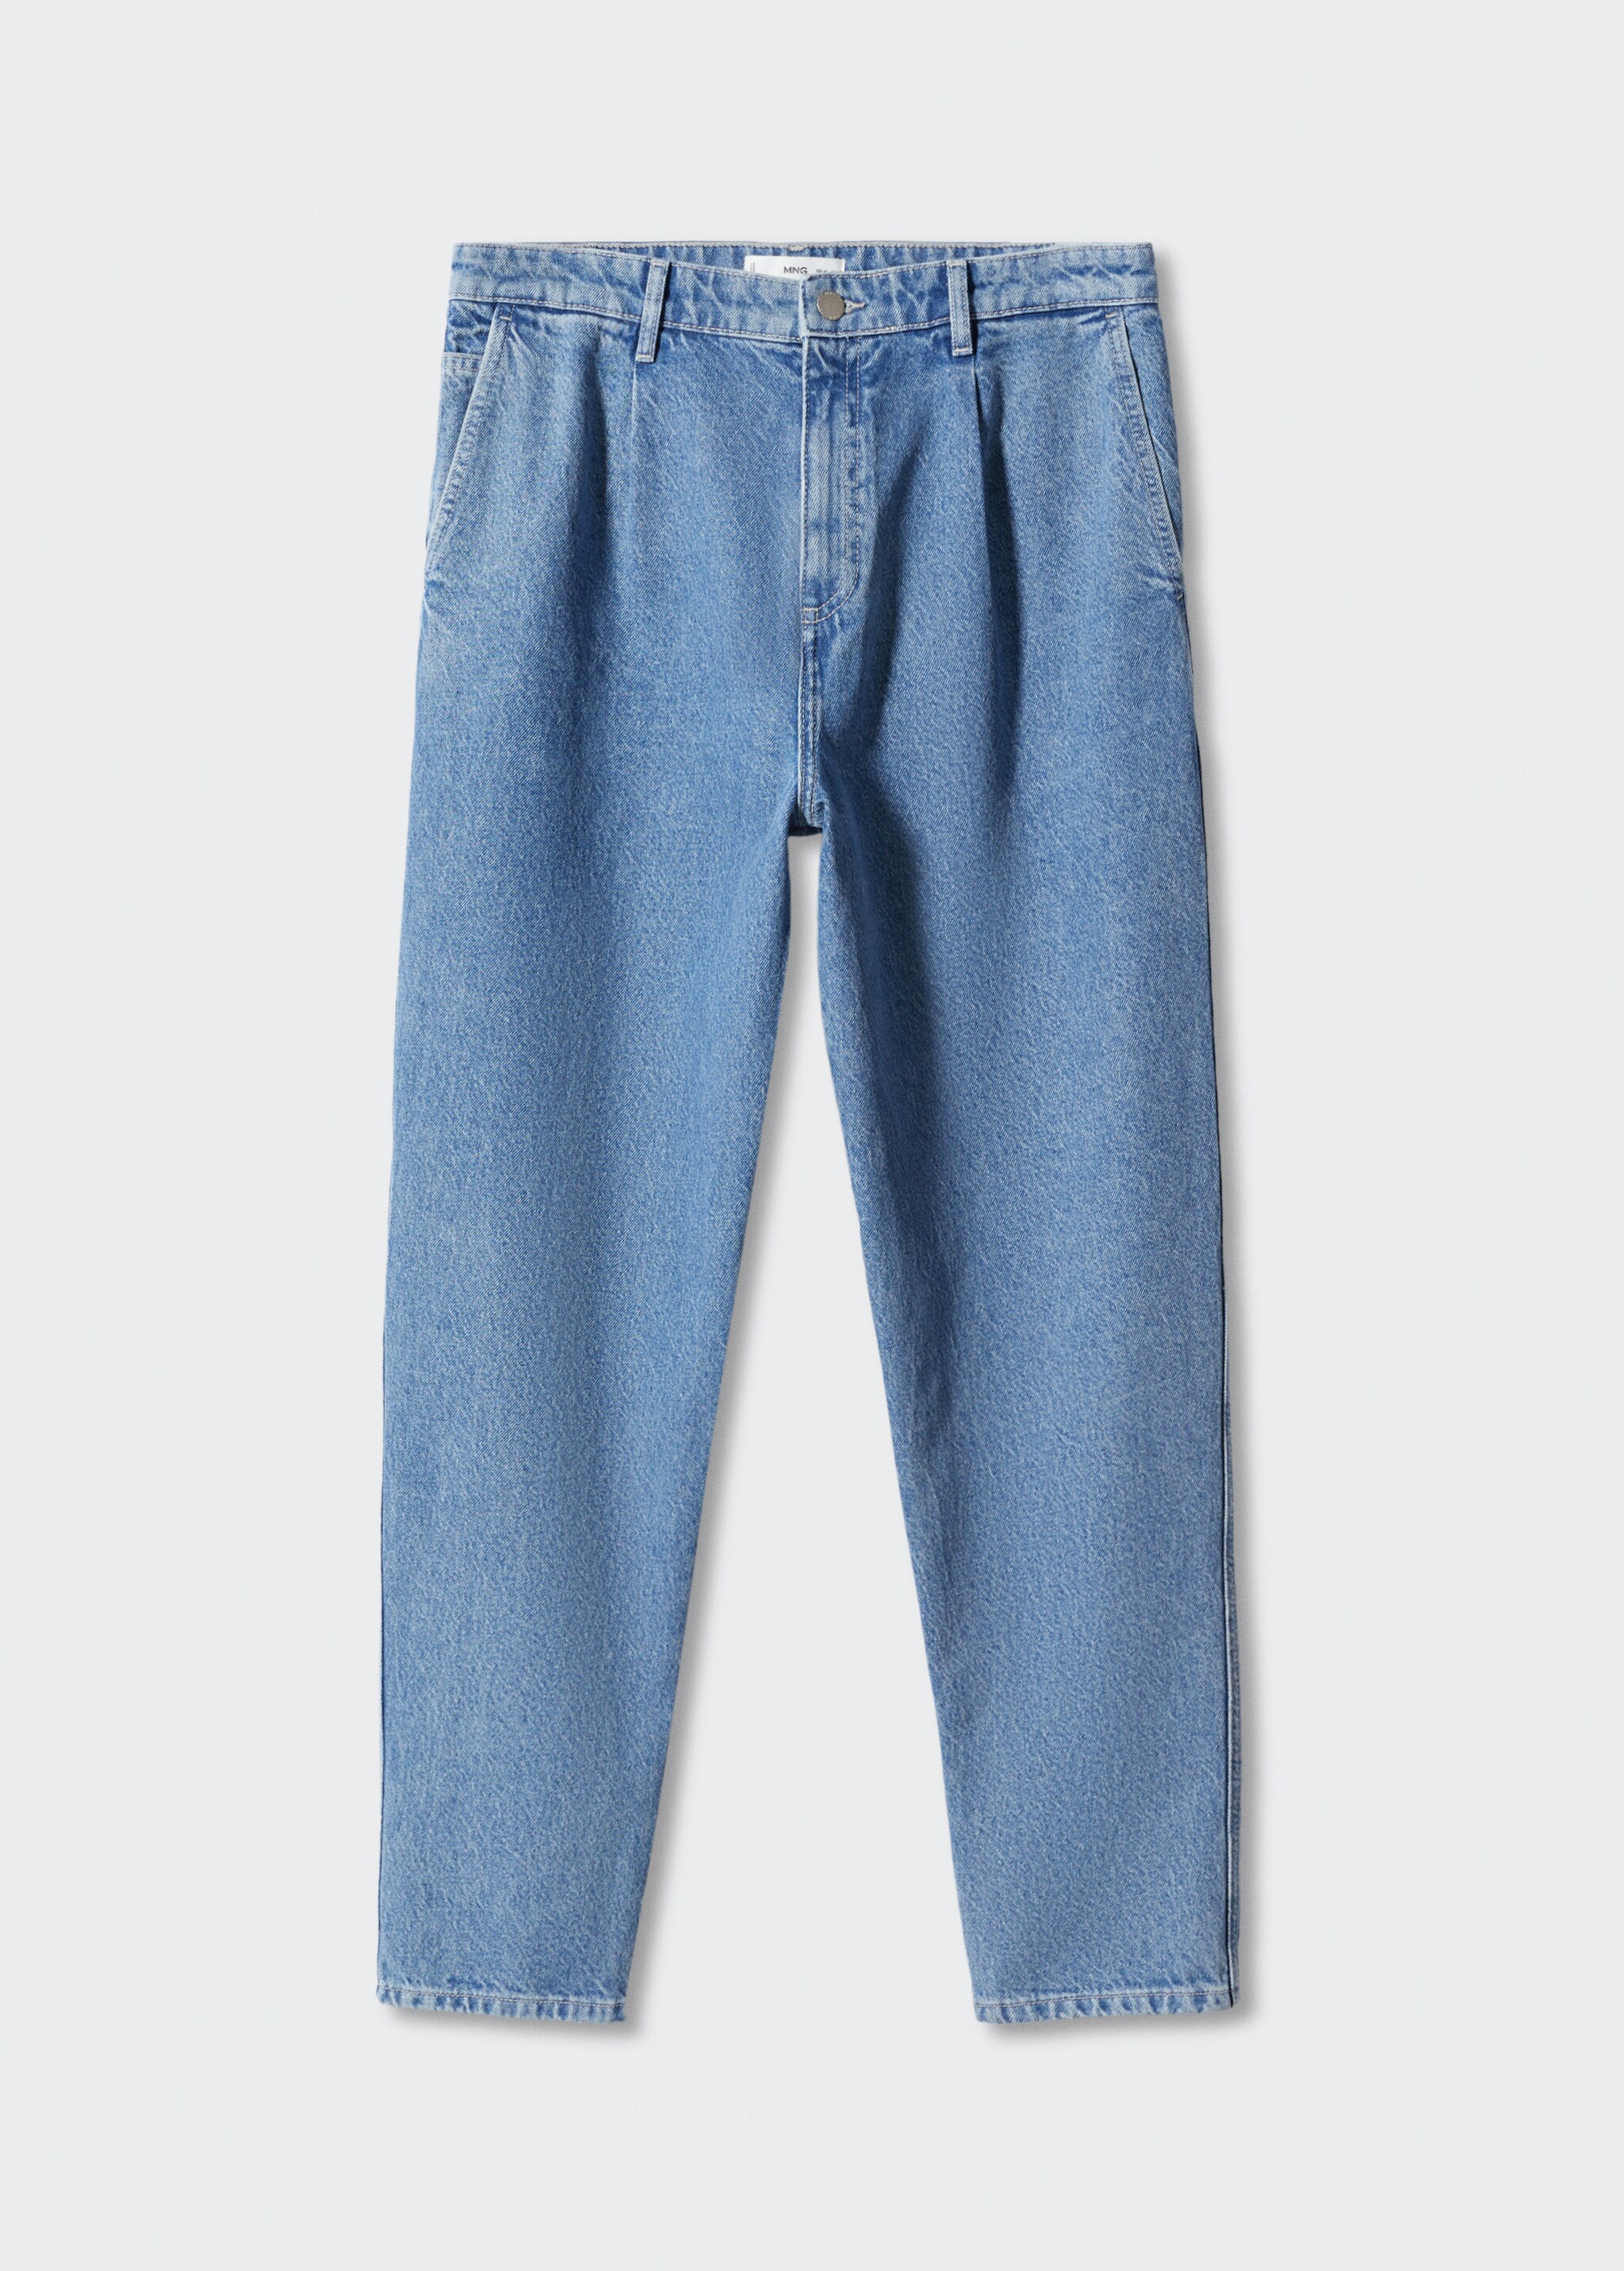 Jeans slouchy pinzas  - Artículo sin modelo